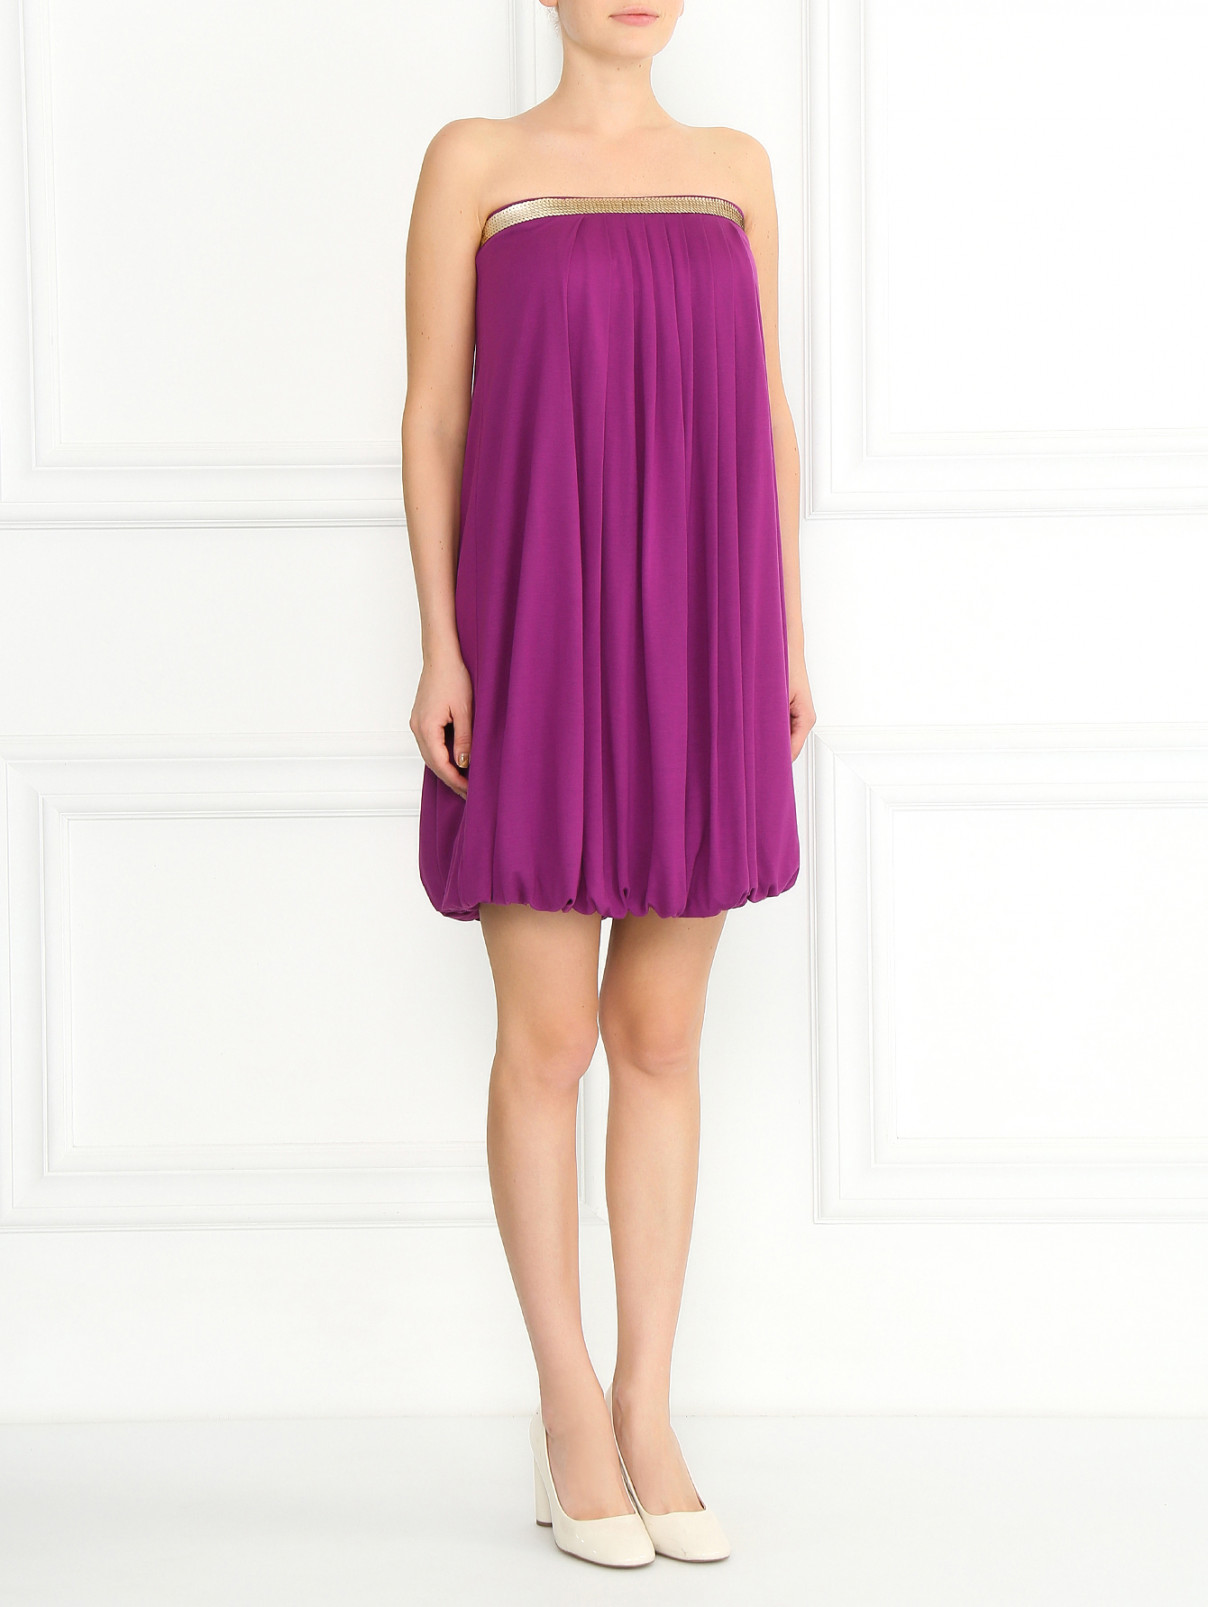 Трикотажное платье-мини с драпировкой и пайетками La Perla  –  Модель Общий вид  – Цвет:  Фиолетовый